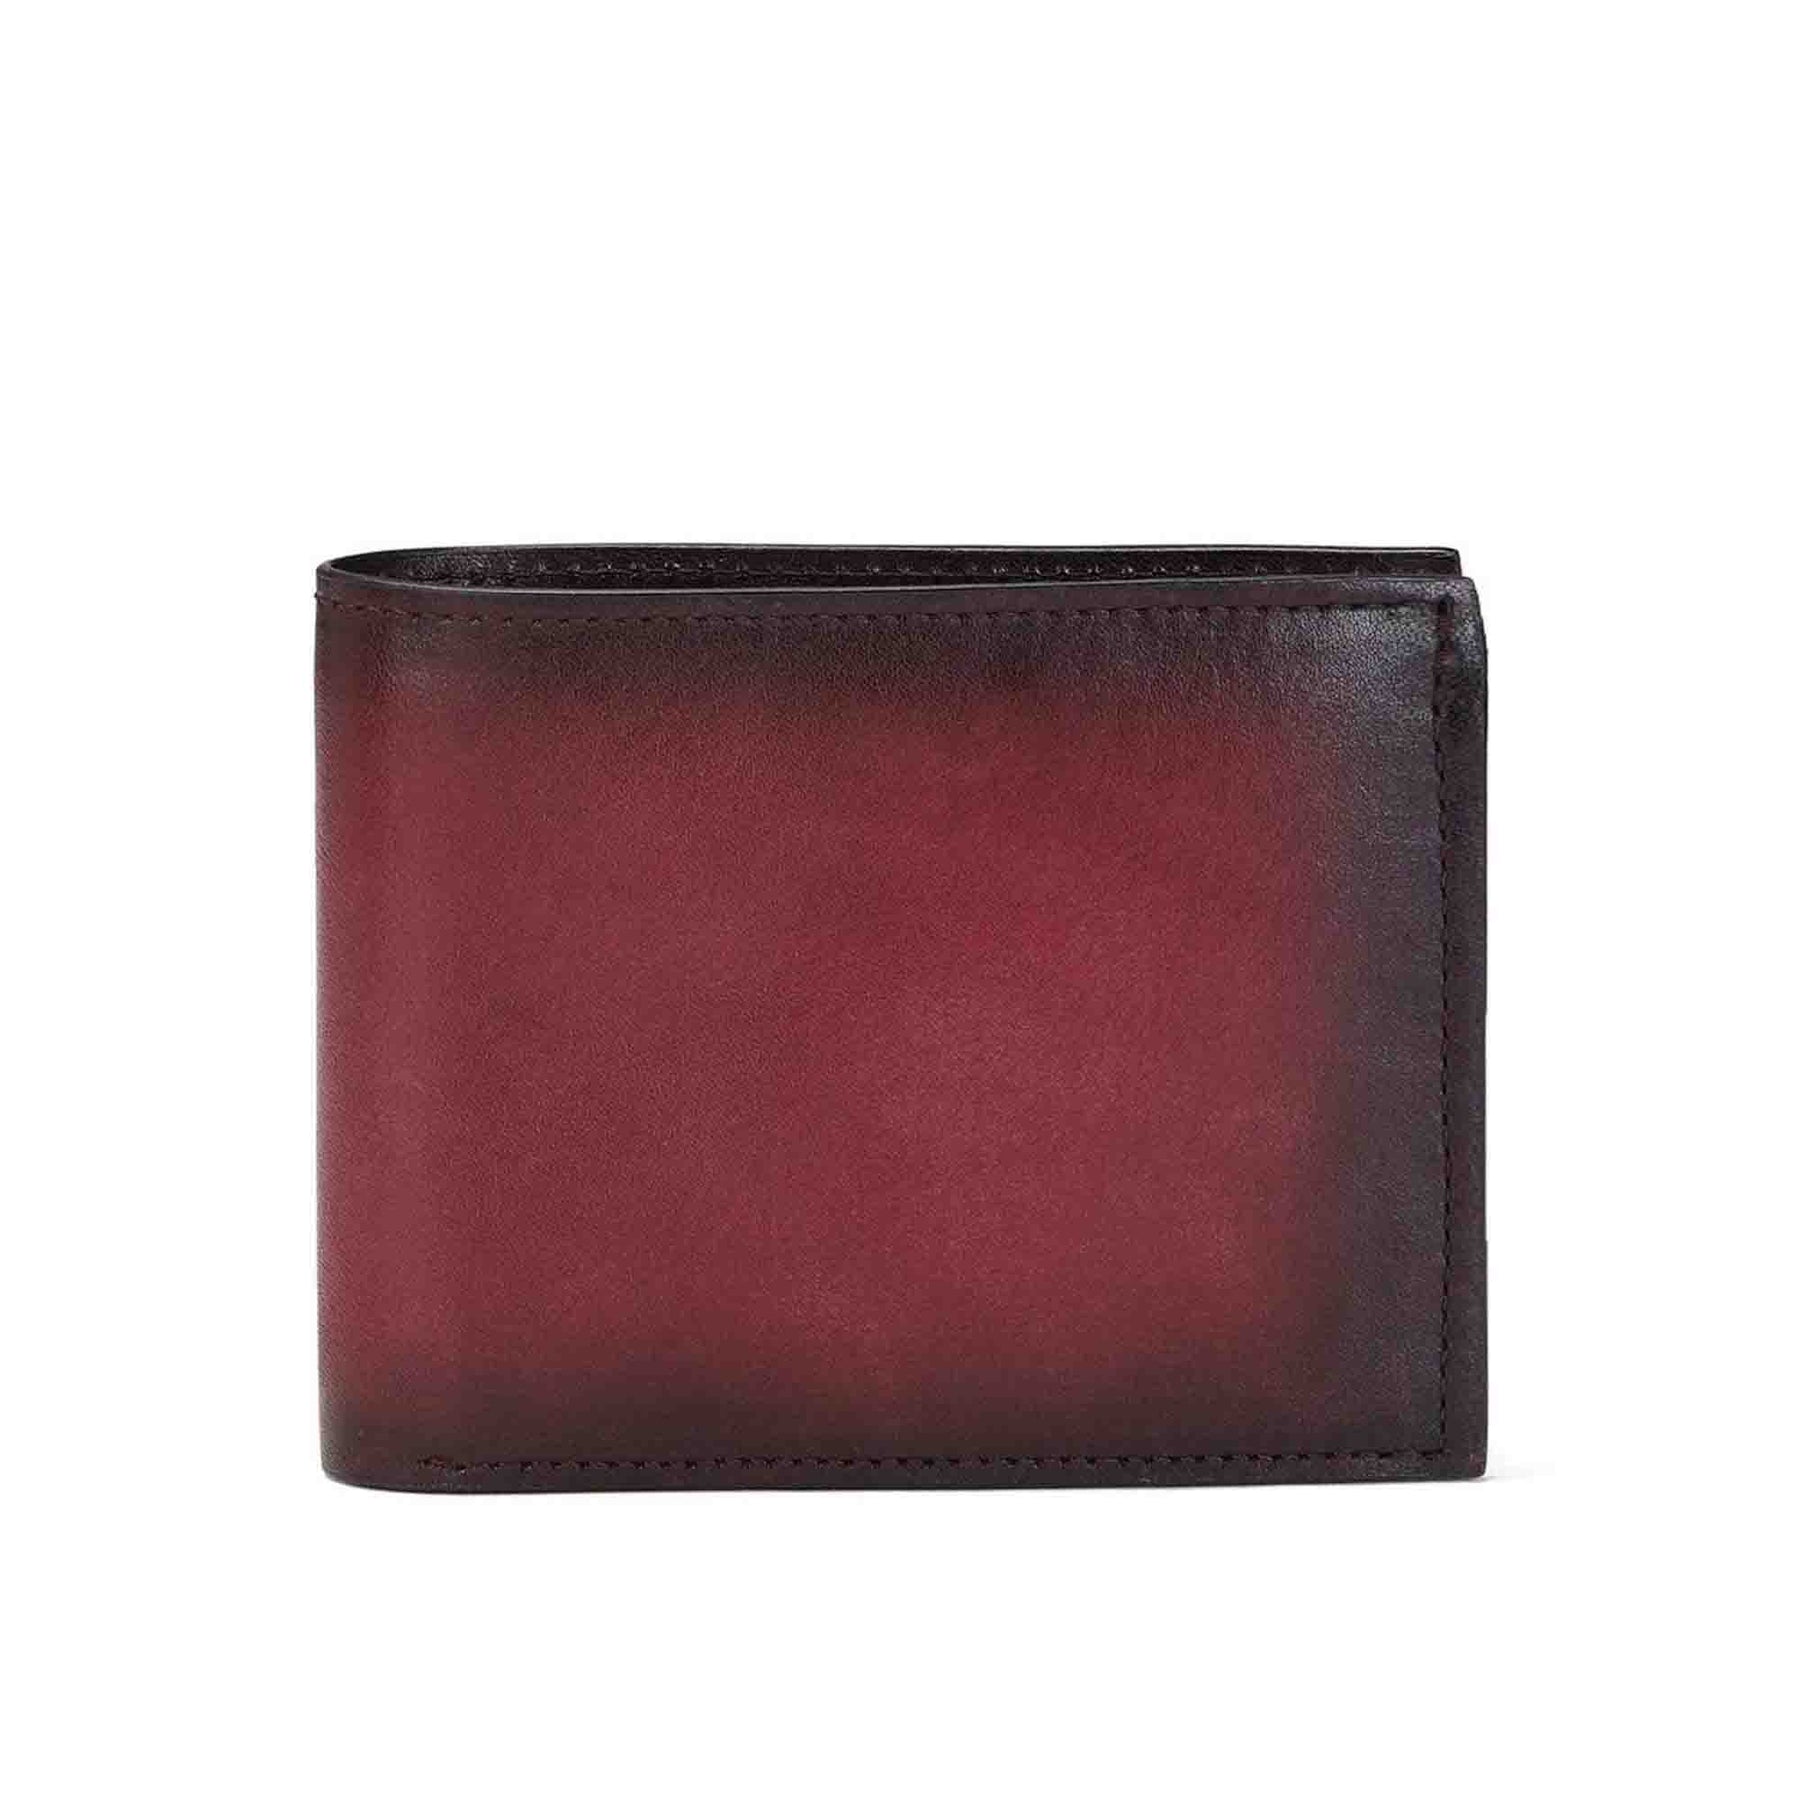 Wallet For Men Leather LUXURY Brand Long Zipper Business Designer Card  Holder | eBay